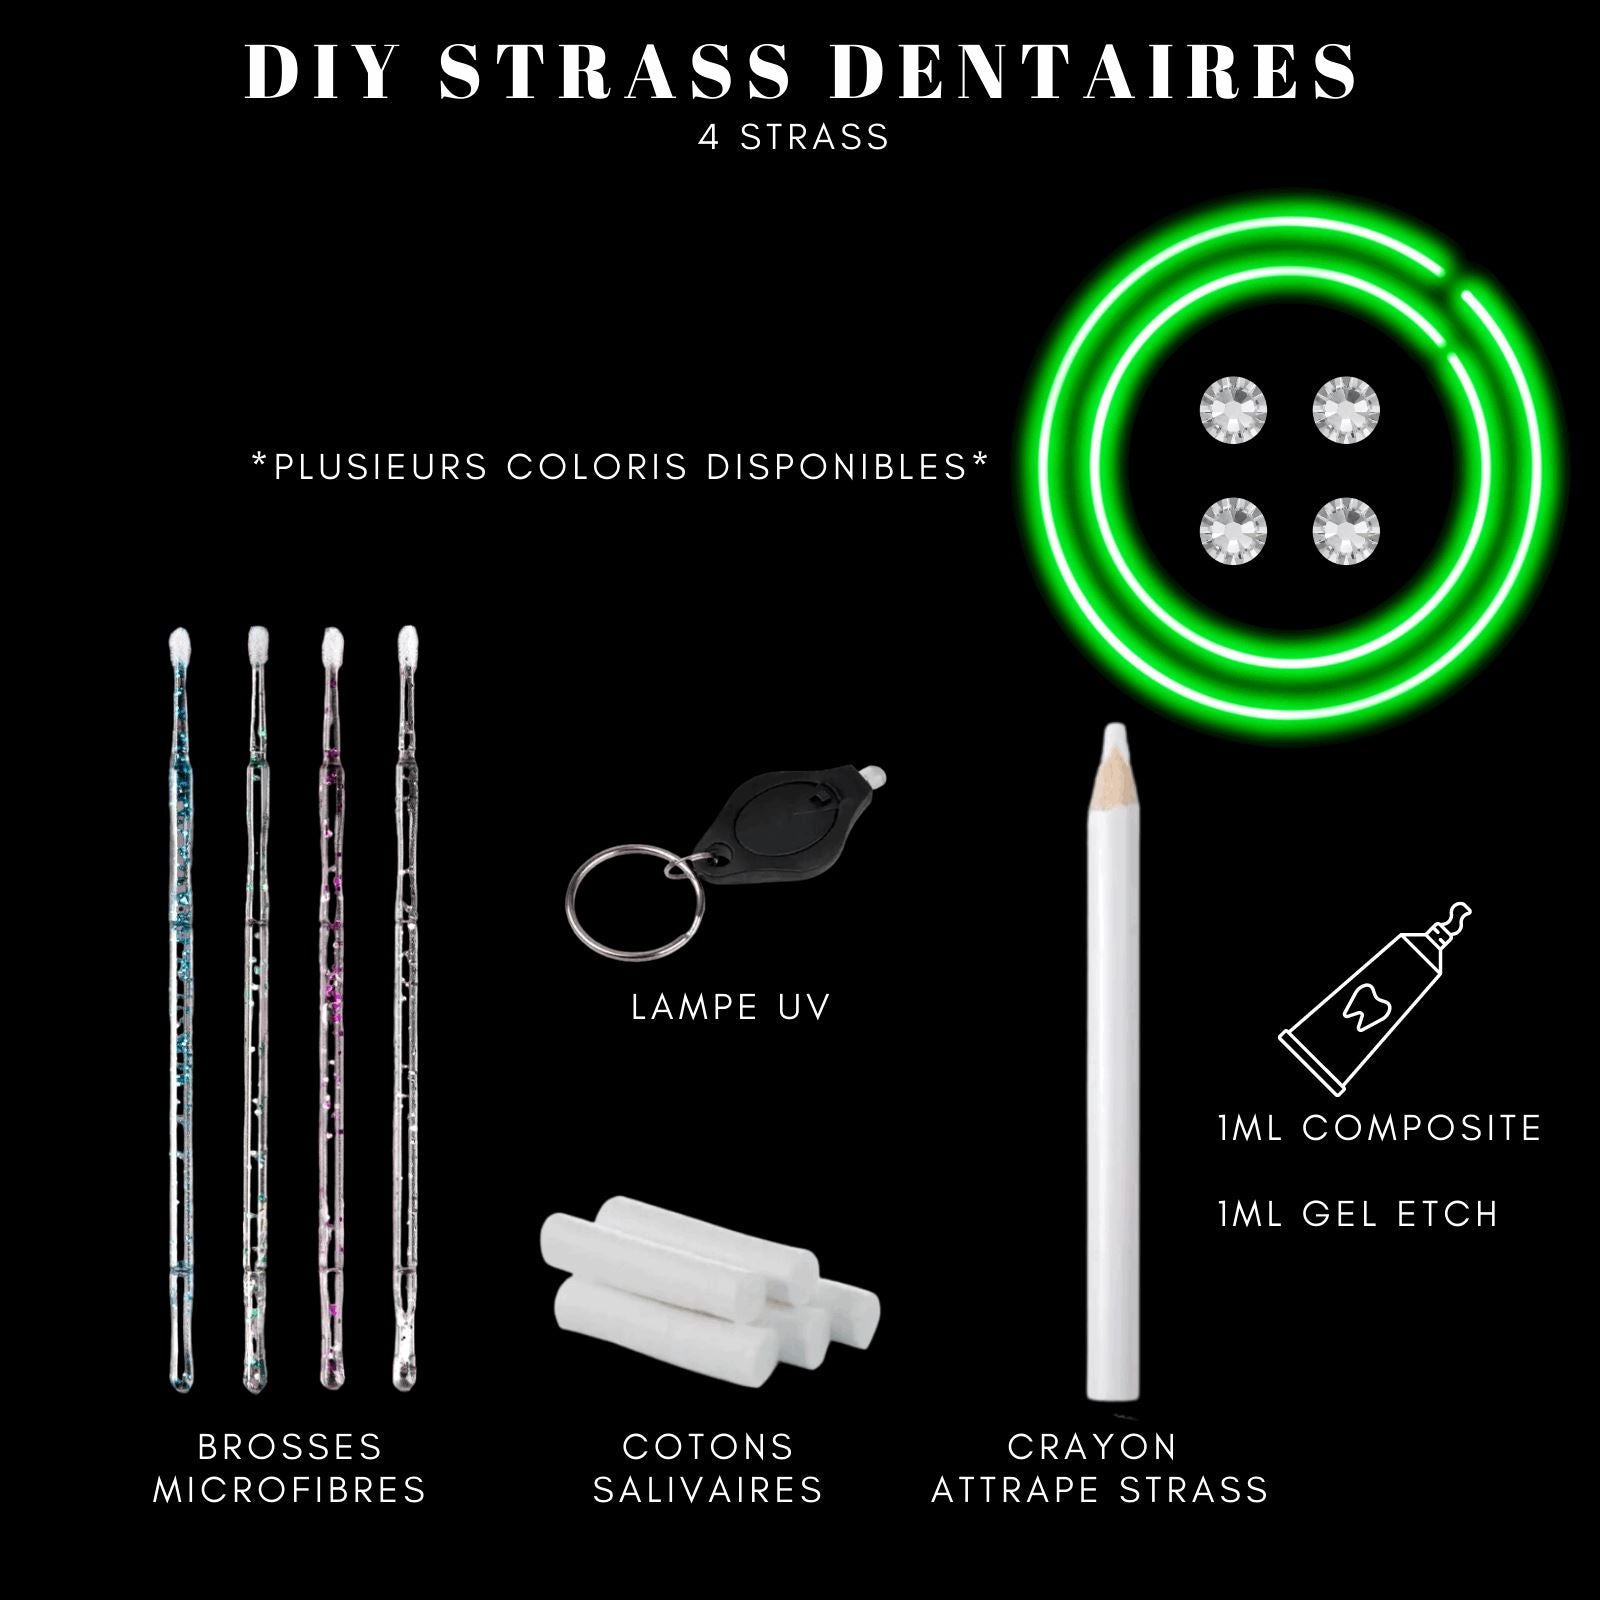 DIY Tooth Gems Kit 4 STRASS - Ton Kit de Pose de strass dentaire Homemade